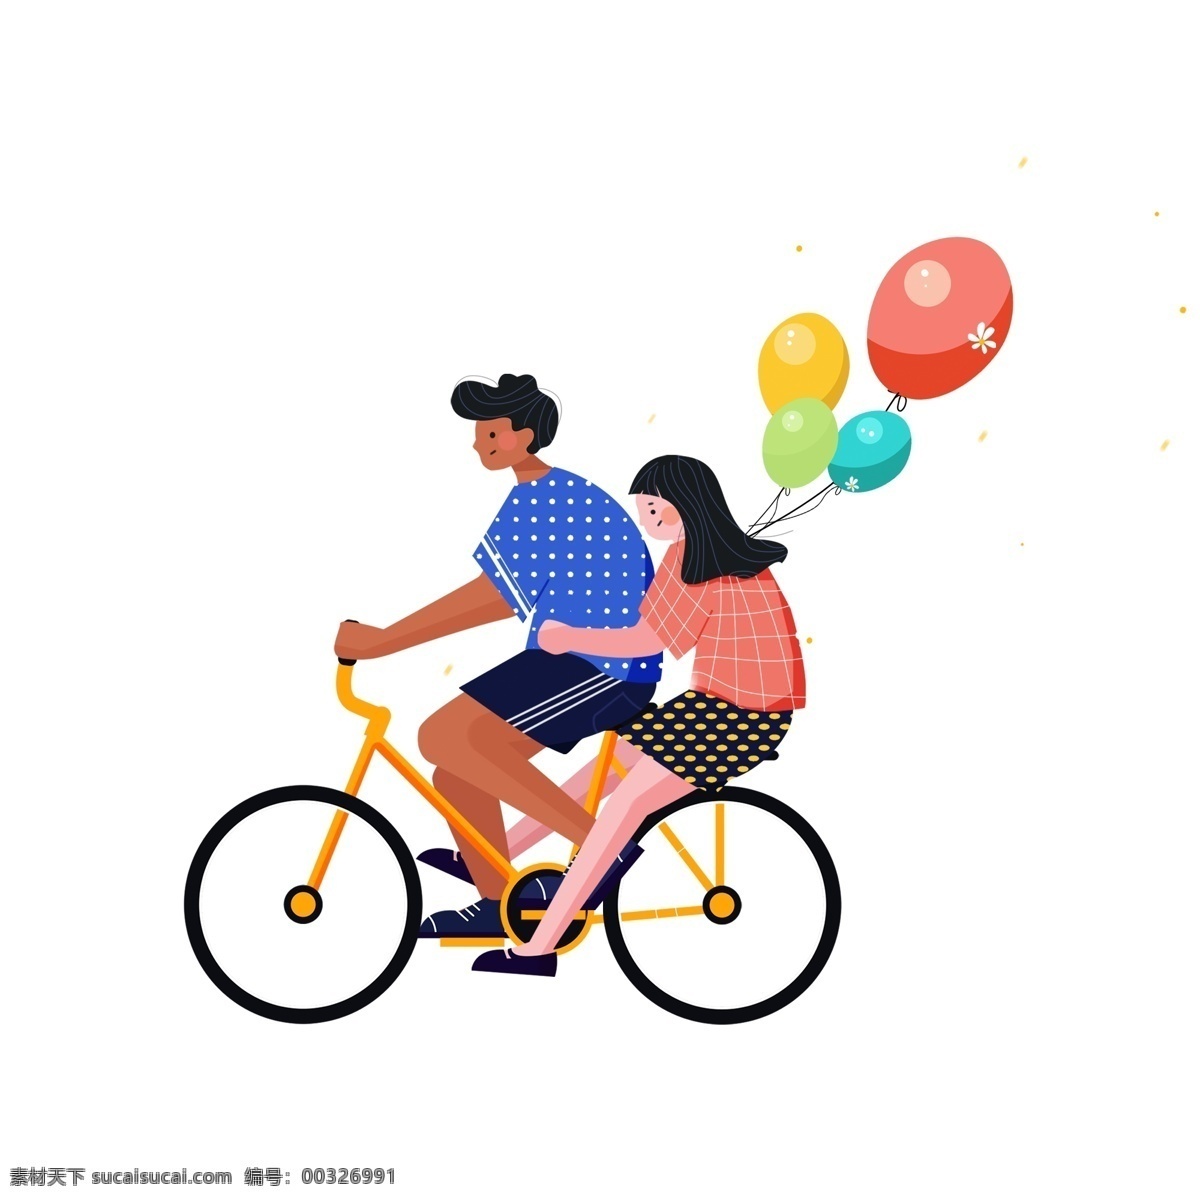 自行 车上 情侣 图案 元素 卡通人物 人物图案 卡通情侣 气球 自行车 人物素材 手绘 简约 手绘元素 psd元素 免扣元素